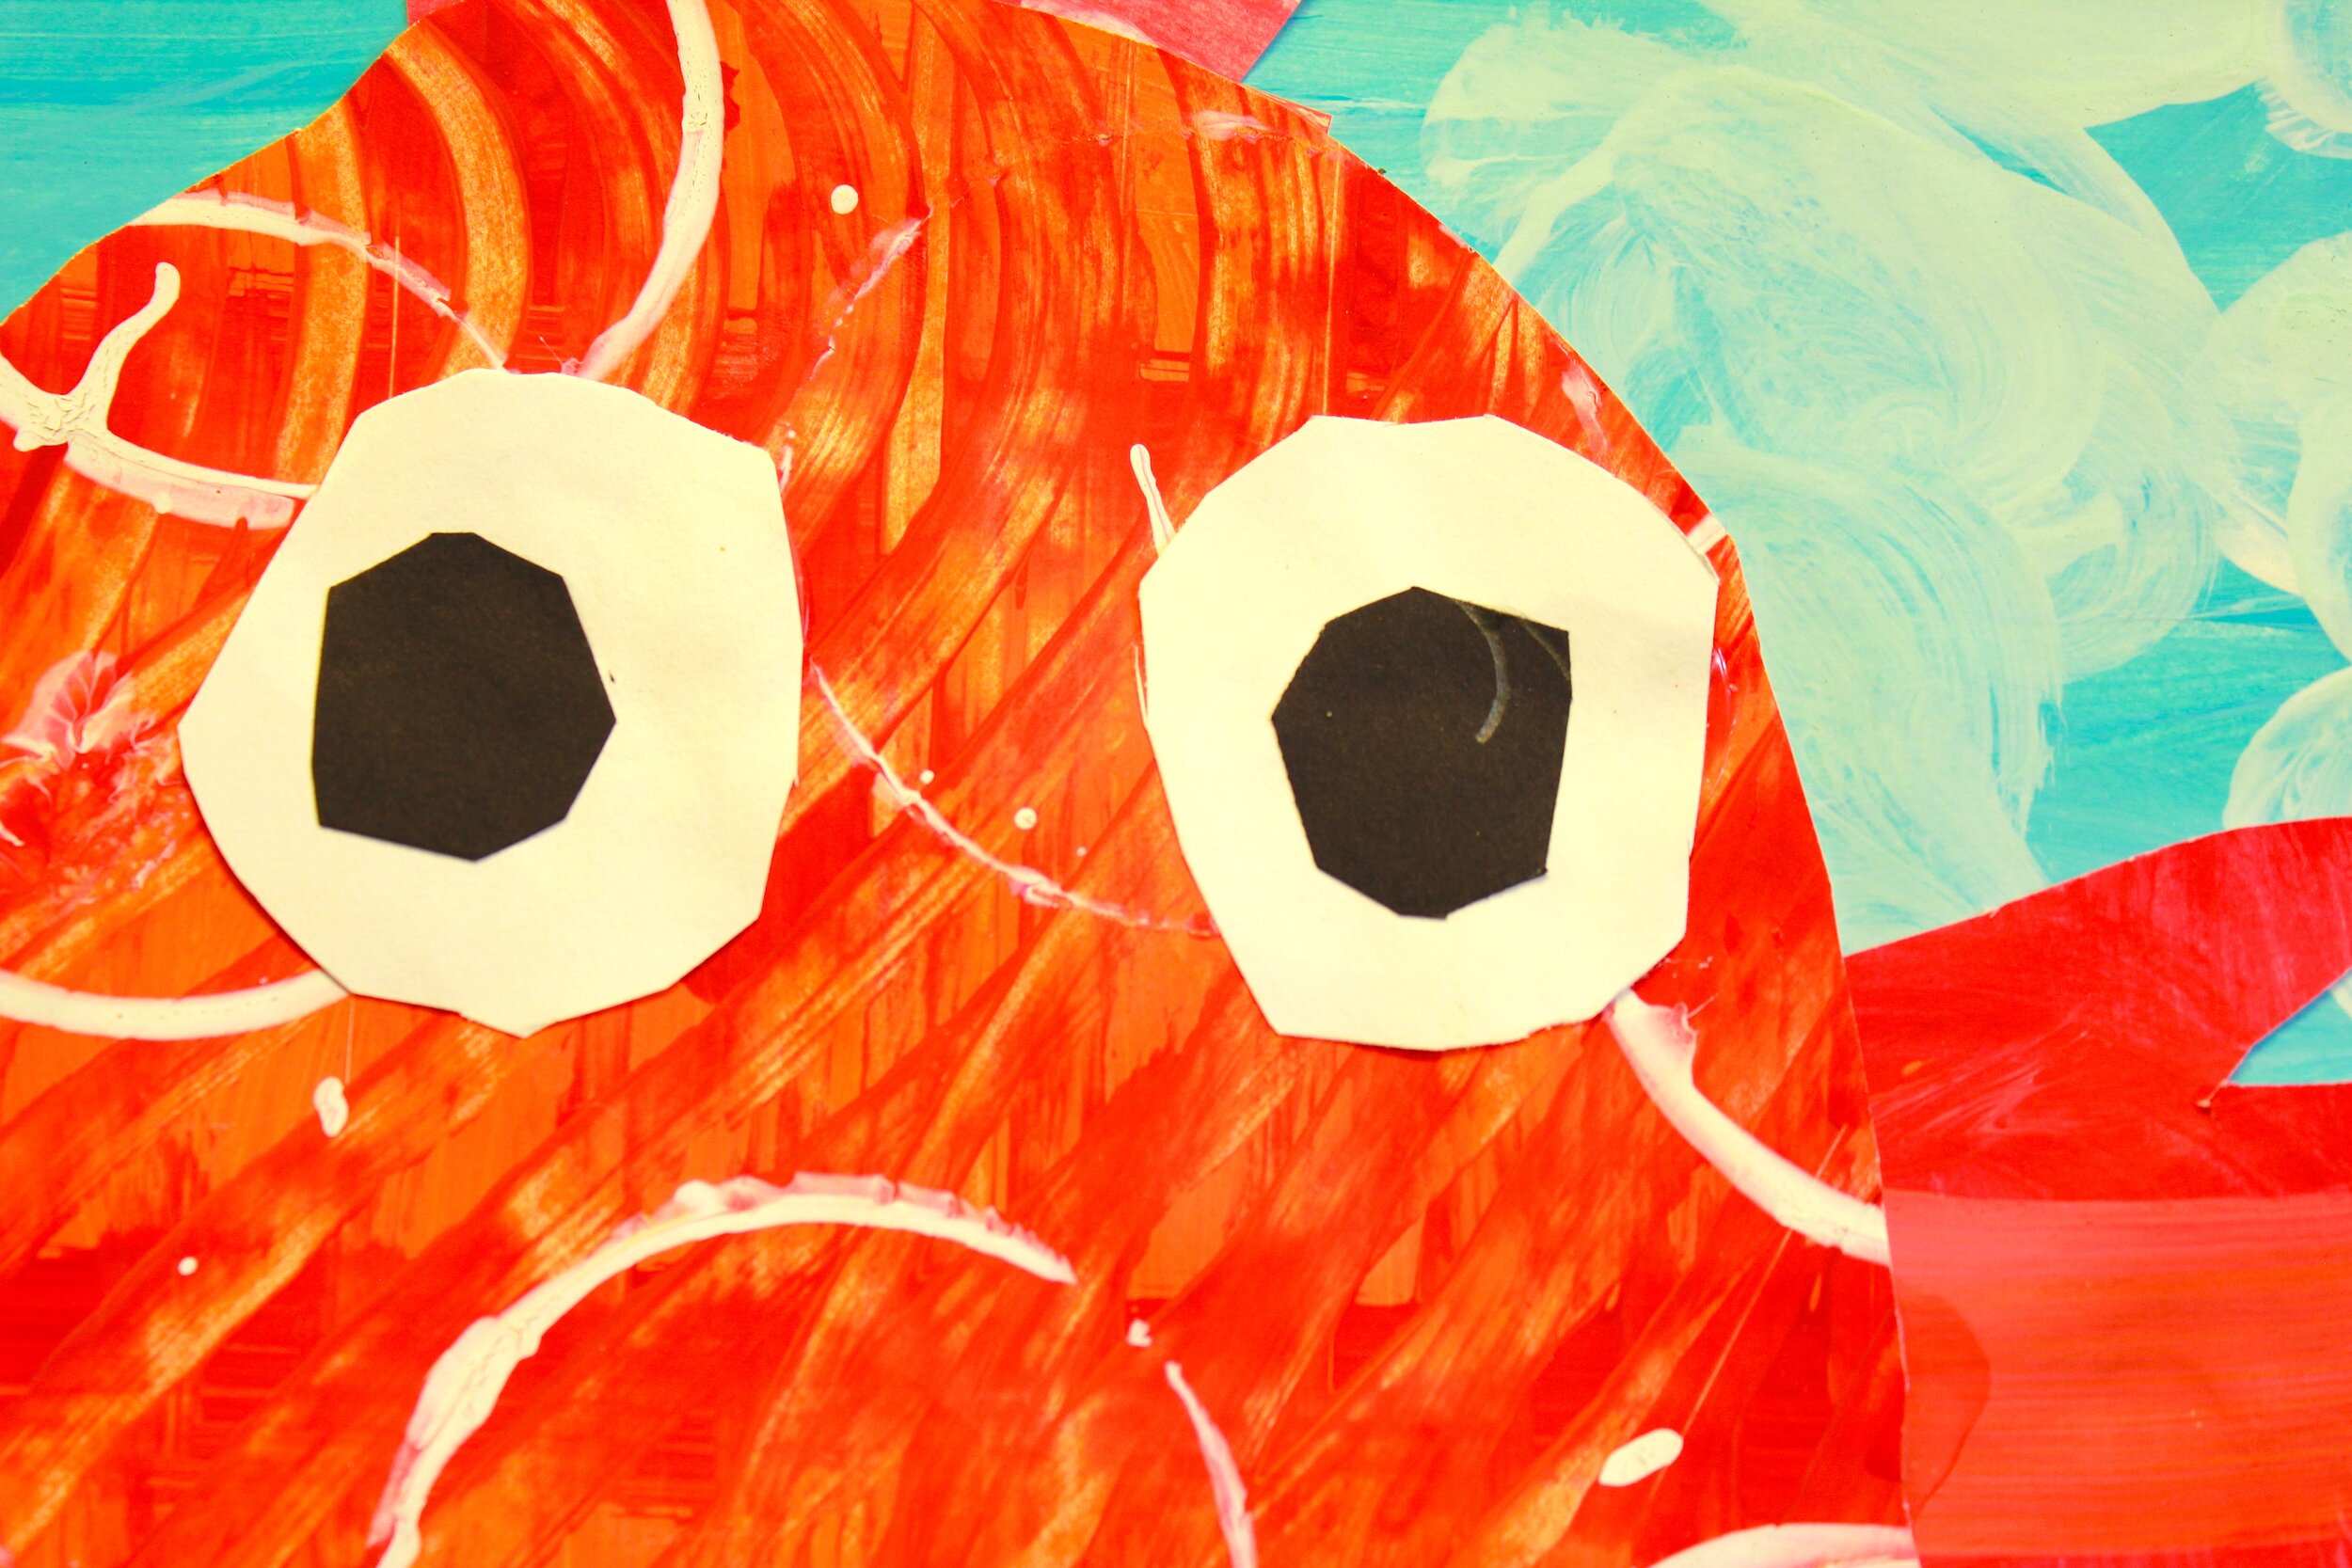 Emma_Kindergarten_Red Chicken_Tempra Collage_detail.jpg